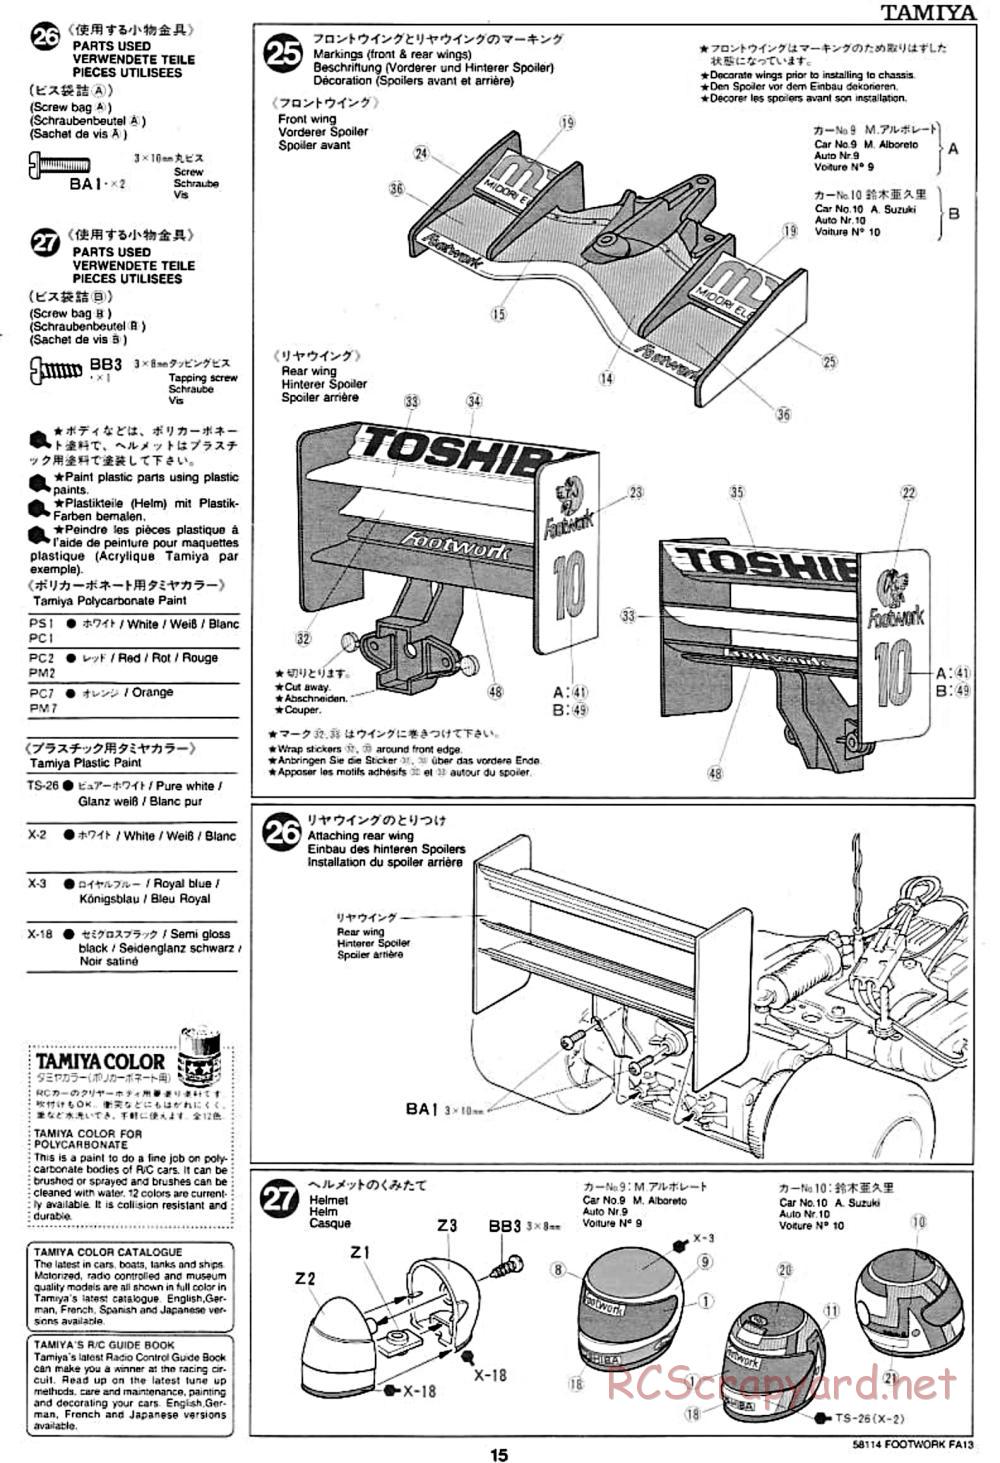 Tamiya - Footwork FA13 Mugen Honda - F102 Chassis - Manual - Page 15